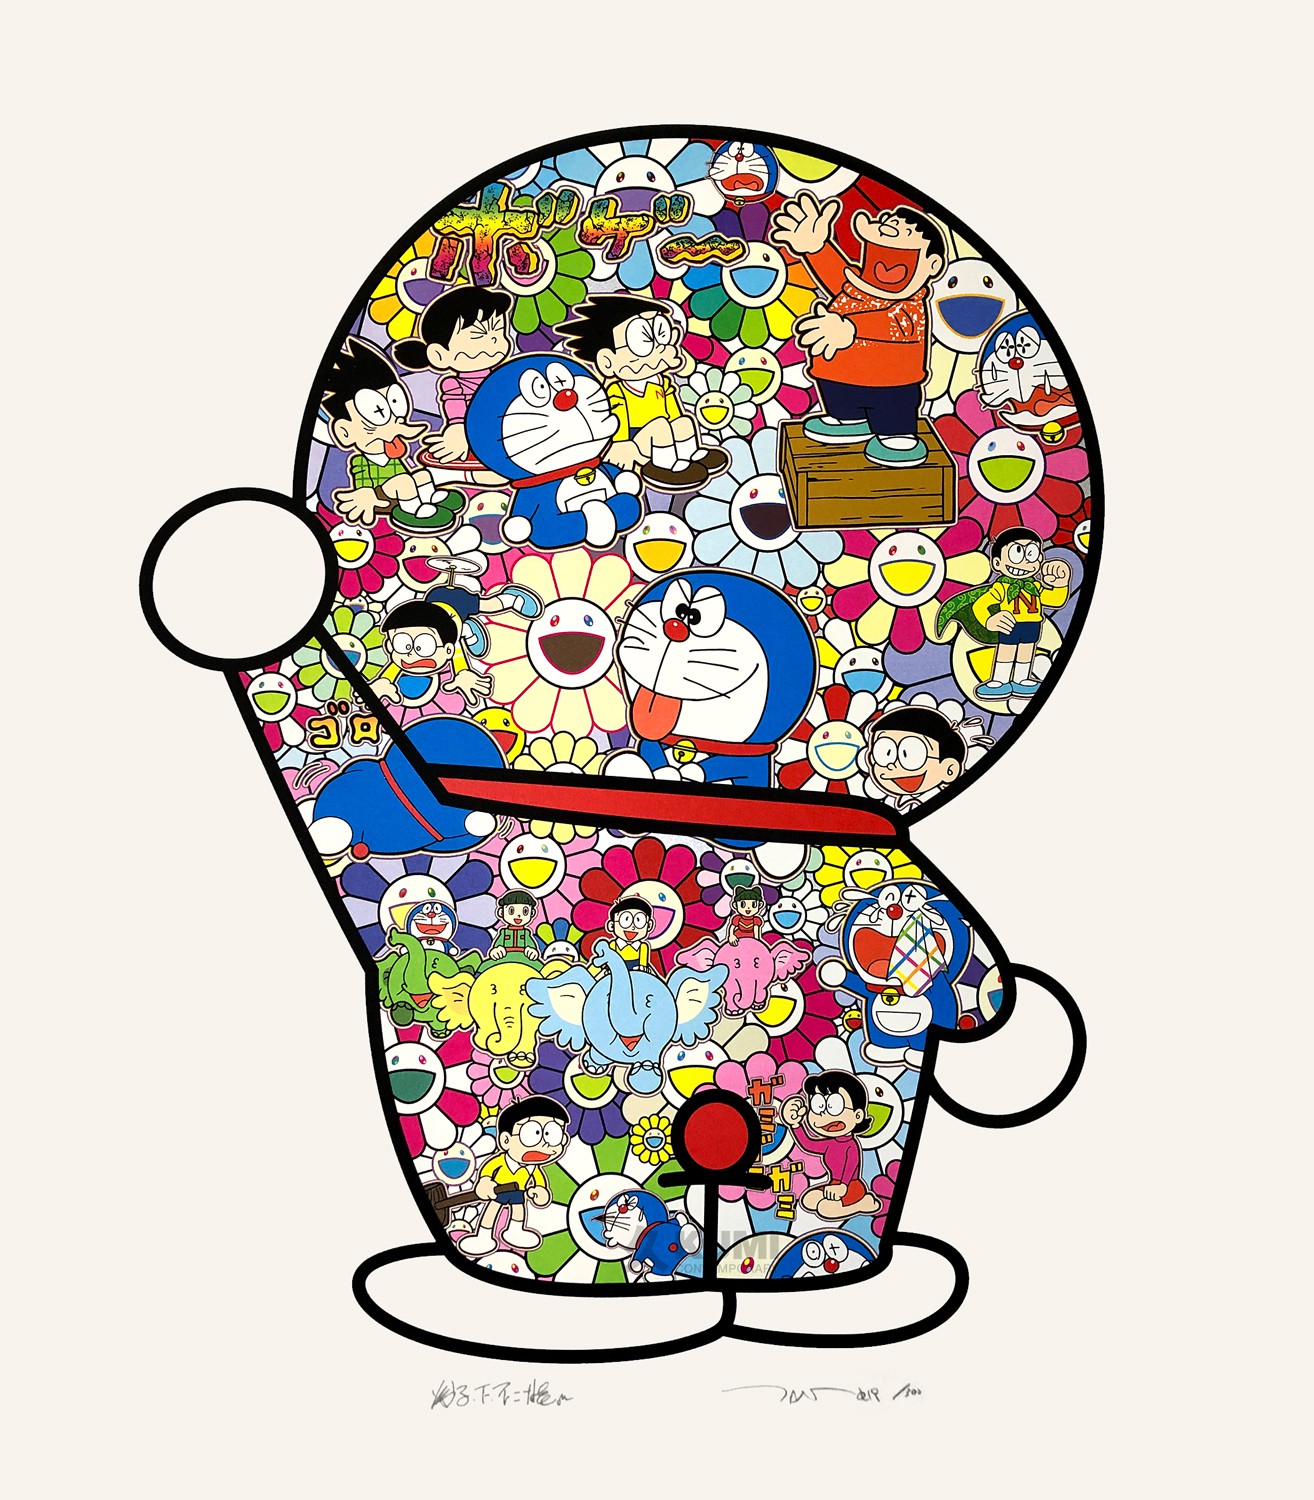 Programación Doraemon CR(Kamecorp) on X: Hoy es el cumpleaños de Doraemon  y en El Club Del Dora-Yaki también lo celebramos!. Gracias por tanto y  por permitir disfrutar de muchas aventuras.  /